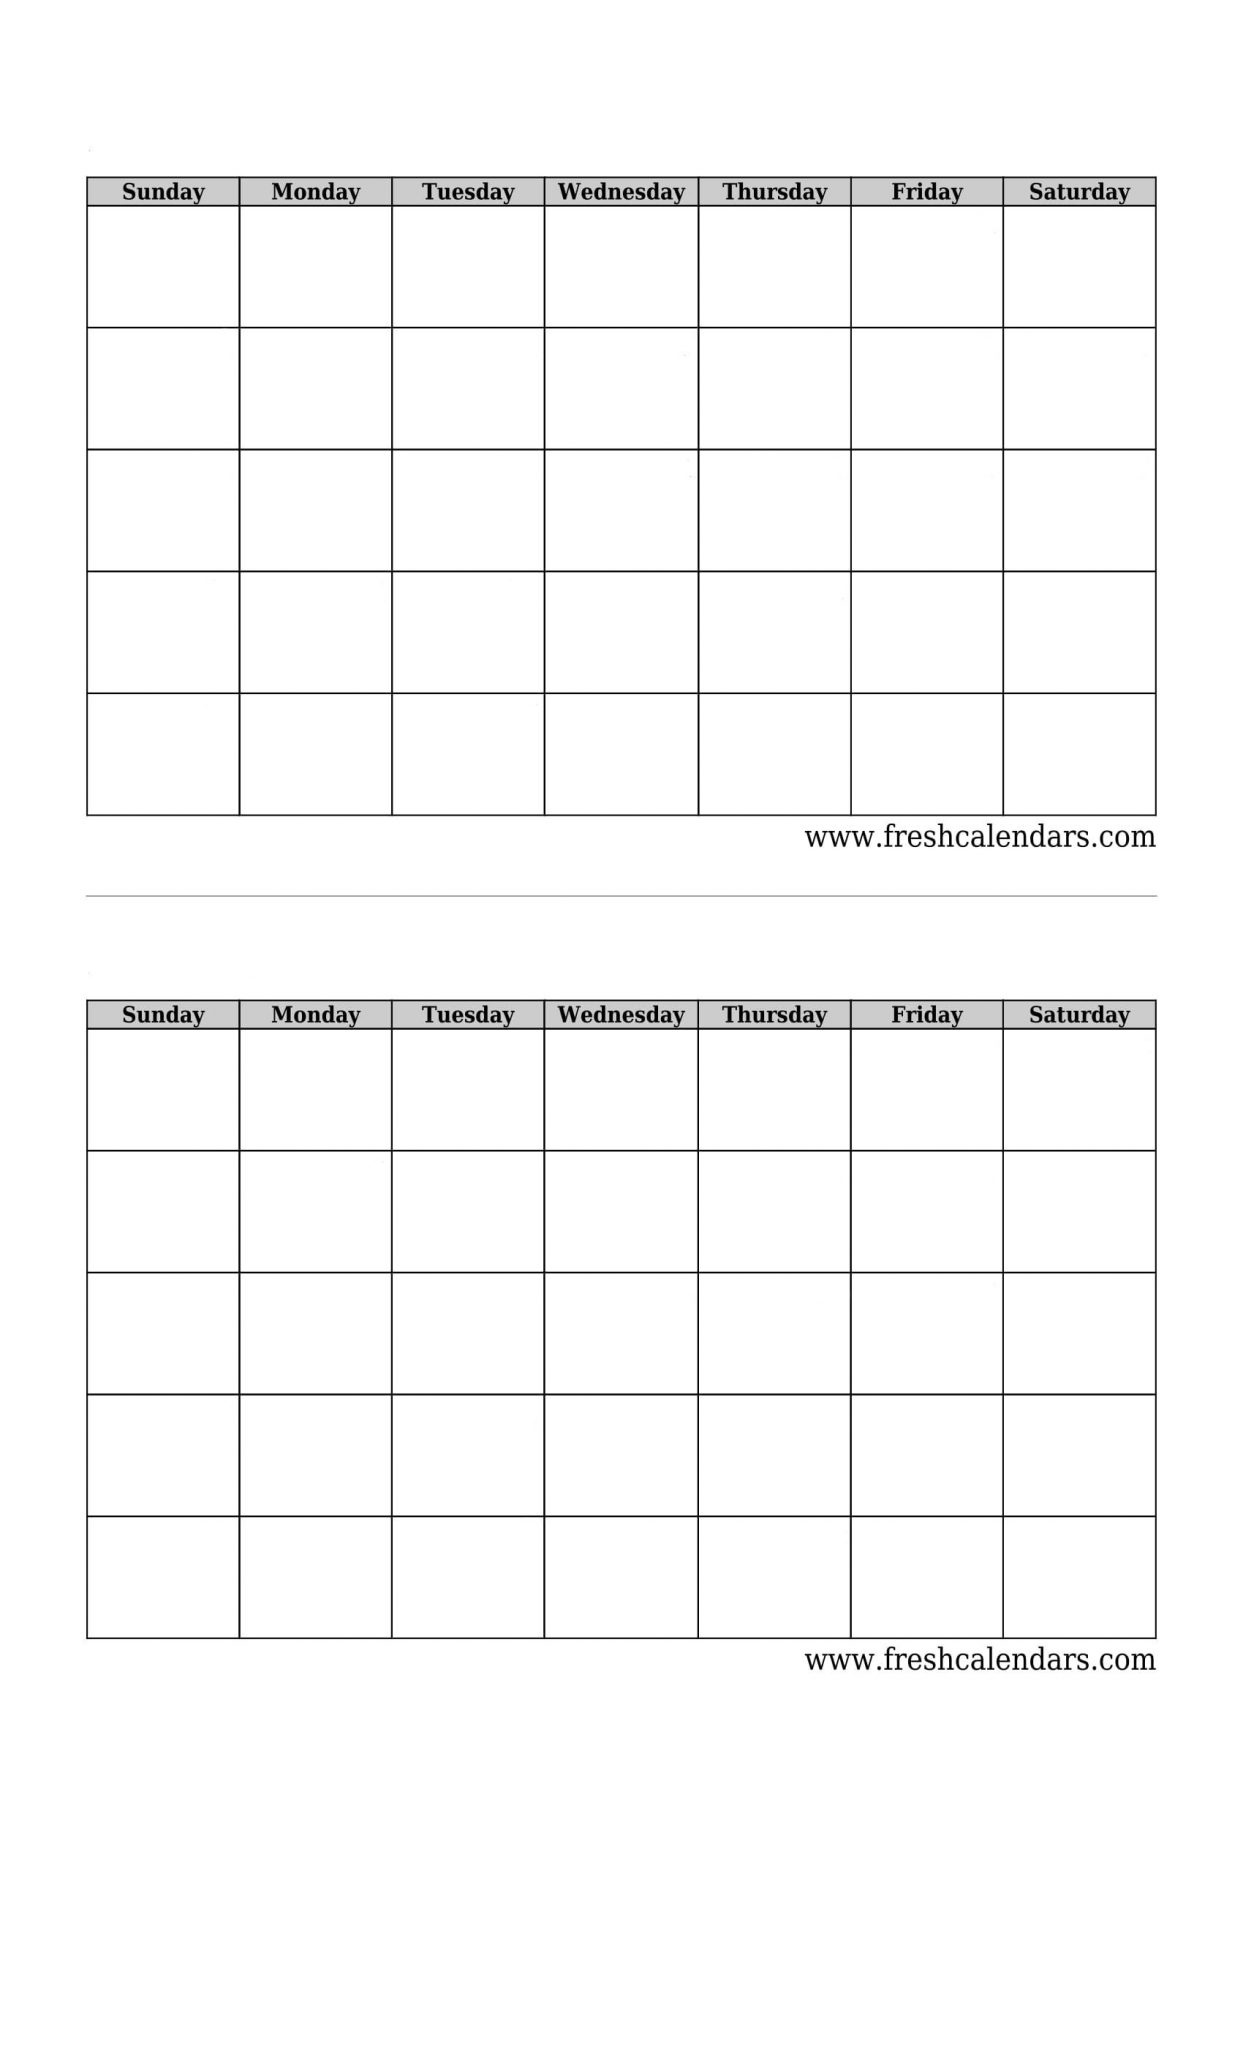 Blank Printable Two Week Calendar :-Free Calendar Template Free Printable 2 Week Calendar